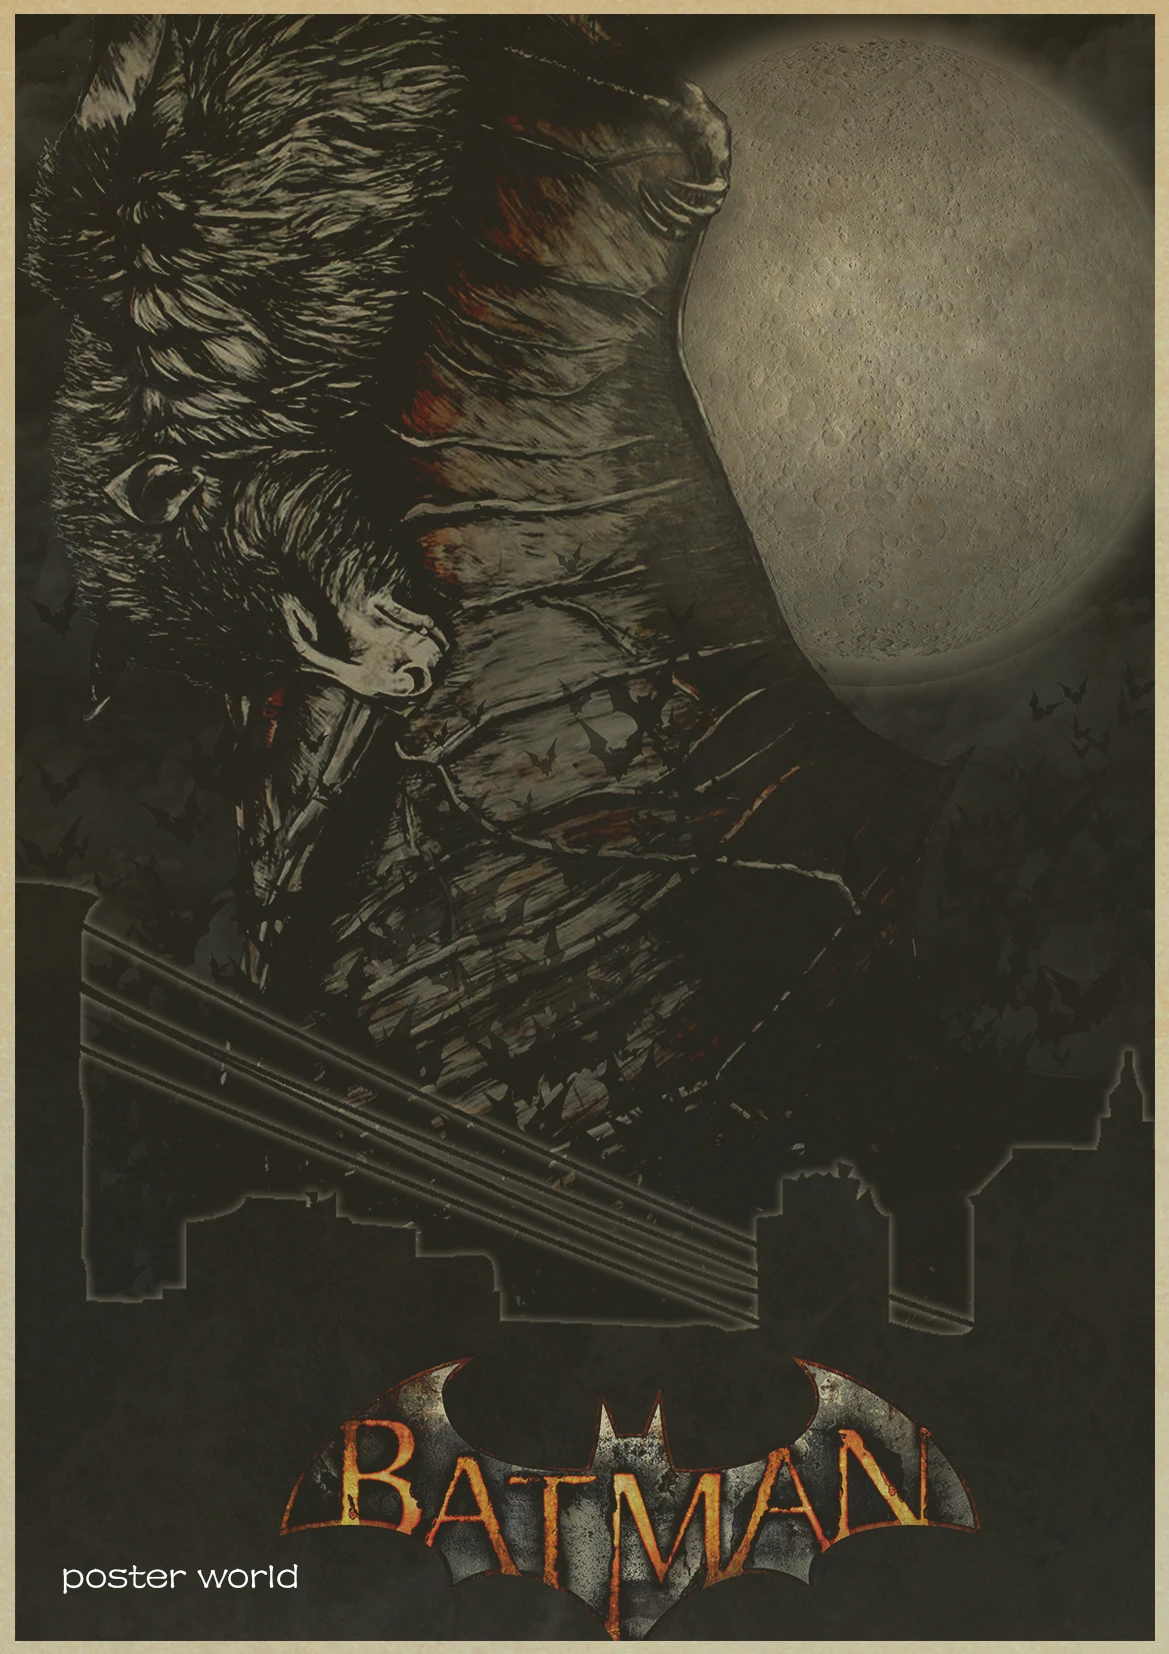 Ретро фильм плакат Бэтмен коричневый бумажный рисунок ядро висячая картина Картина в стиле комикса винтажная крафт-бумага домашний художественный декоративный плакат - Цвет: A026